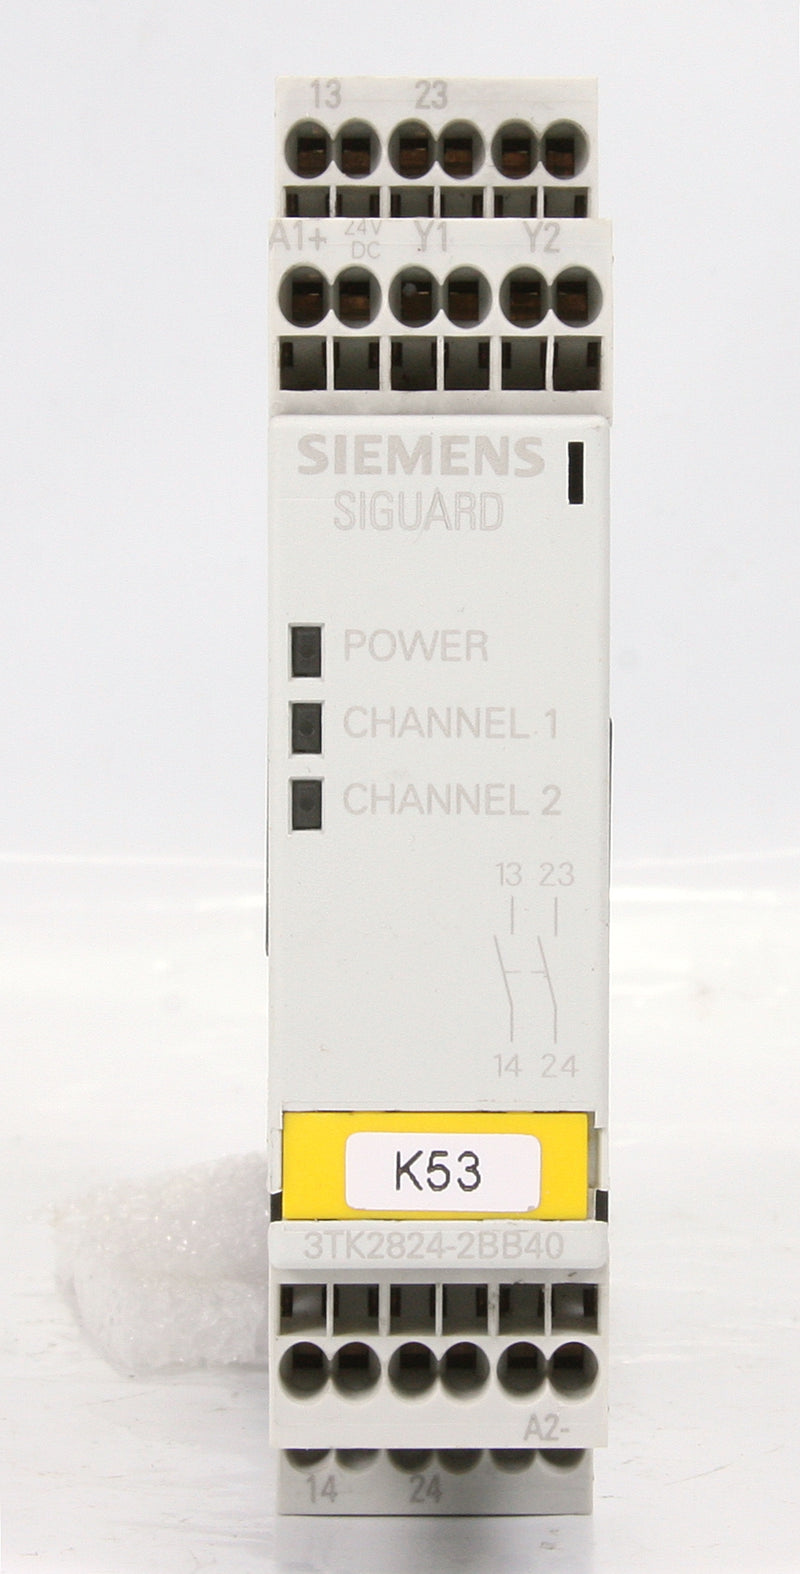 Siemens 3TK2824-2BB40